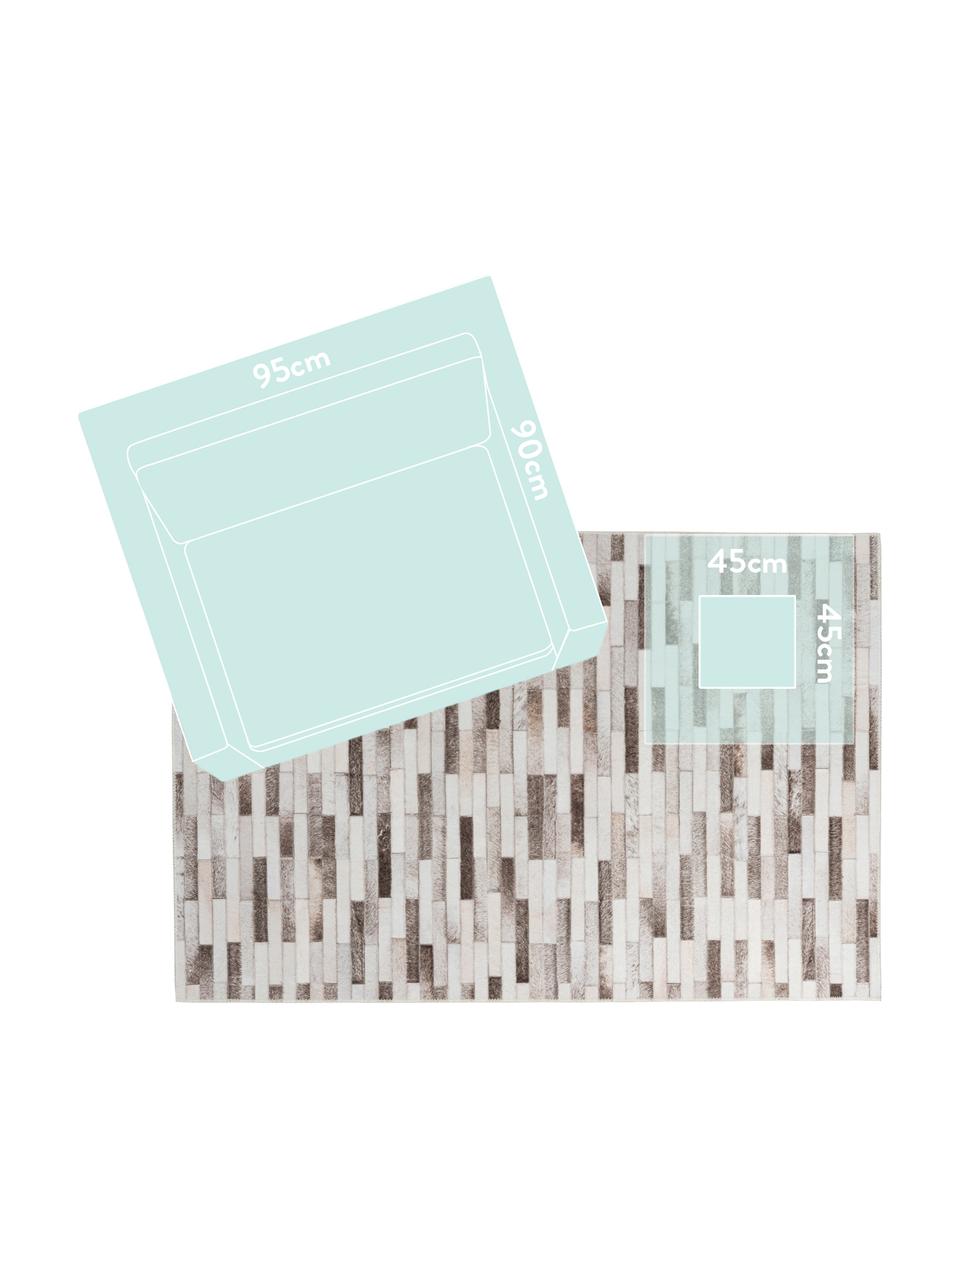 Teppich My Bonanza in Patchwork-Felloptik, Flor: 100% Polyester, Beige- und Brauntöne, B 80 x L 150 cm (Größe XS)